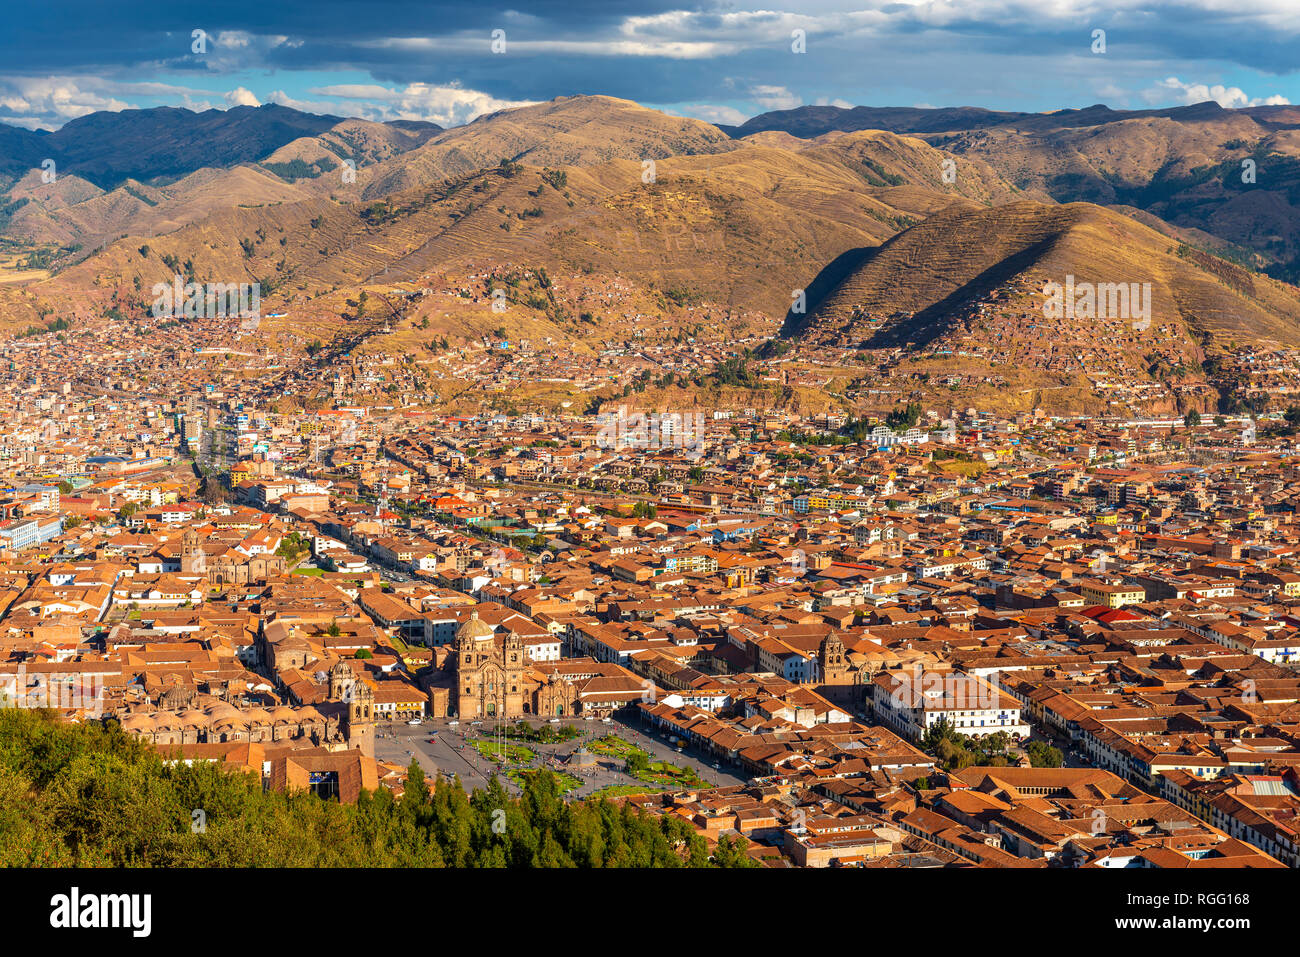 Paisaje urbano de la antigua capital Inca Cusco al atardecer, situado en un valle de la cordillera de Los Andes, Perú, América del Sur. Foto de stock